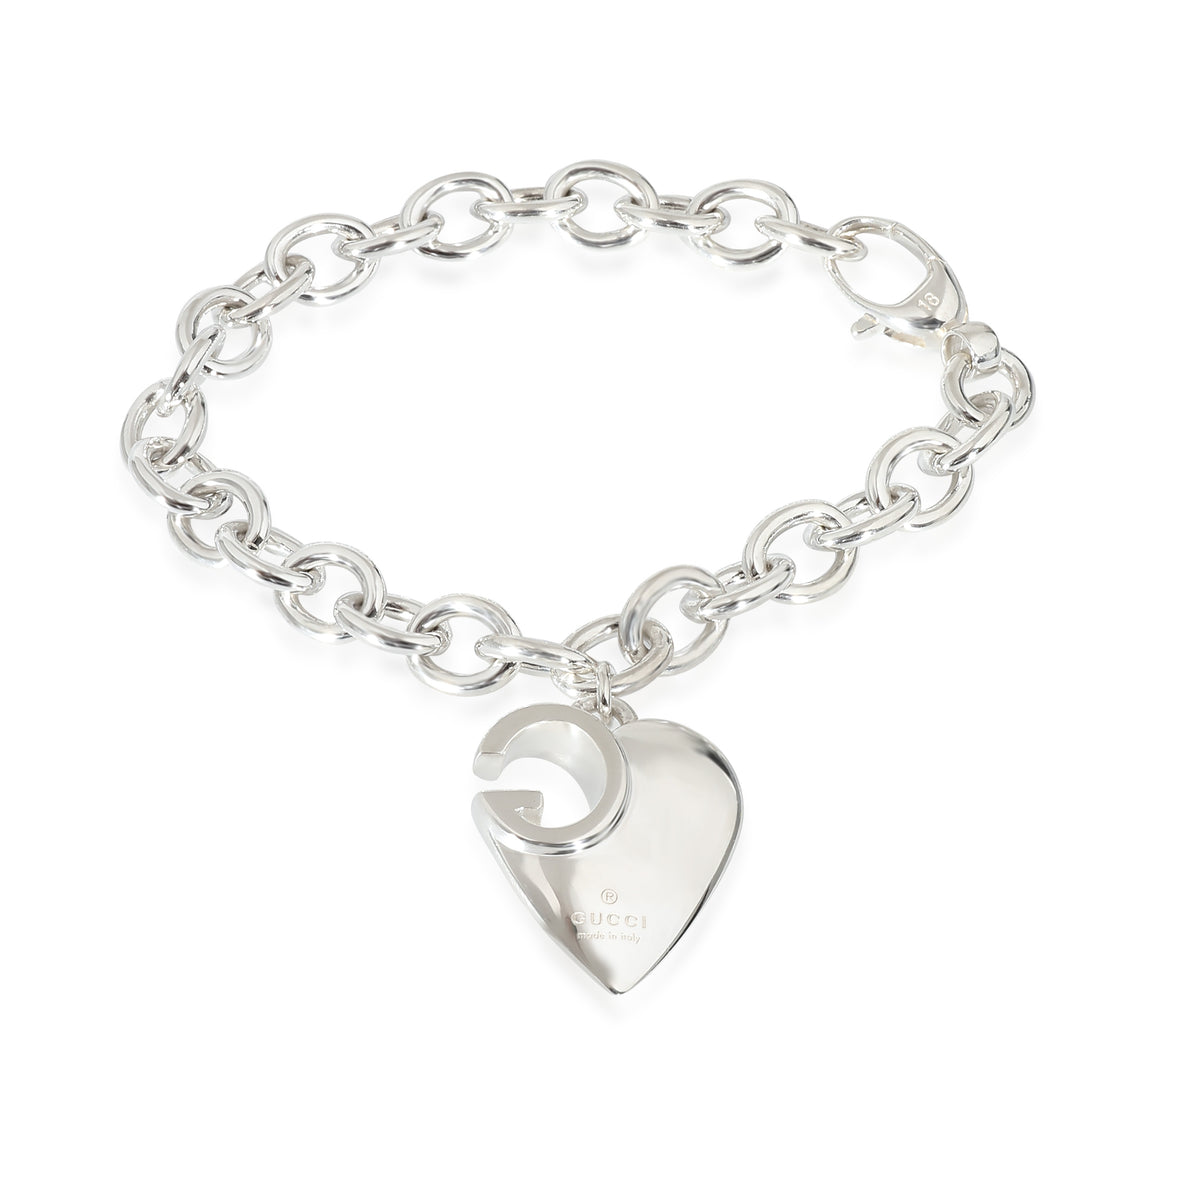 GG Cutout Heart Charm Bracelet in Sterling Silver